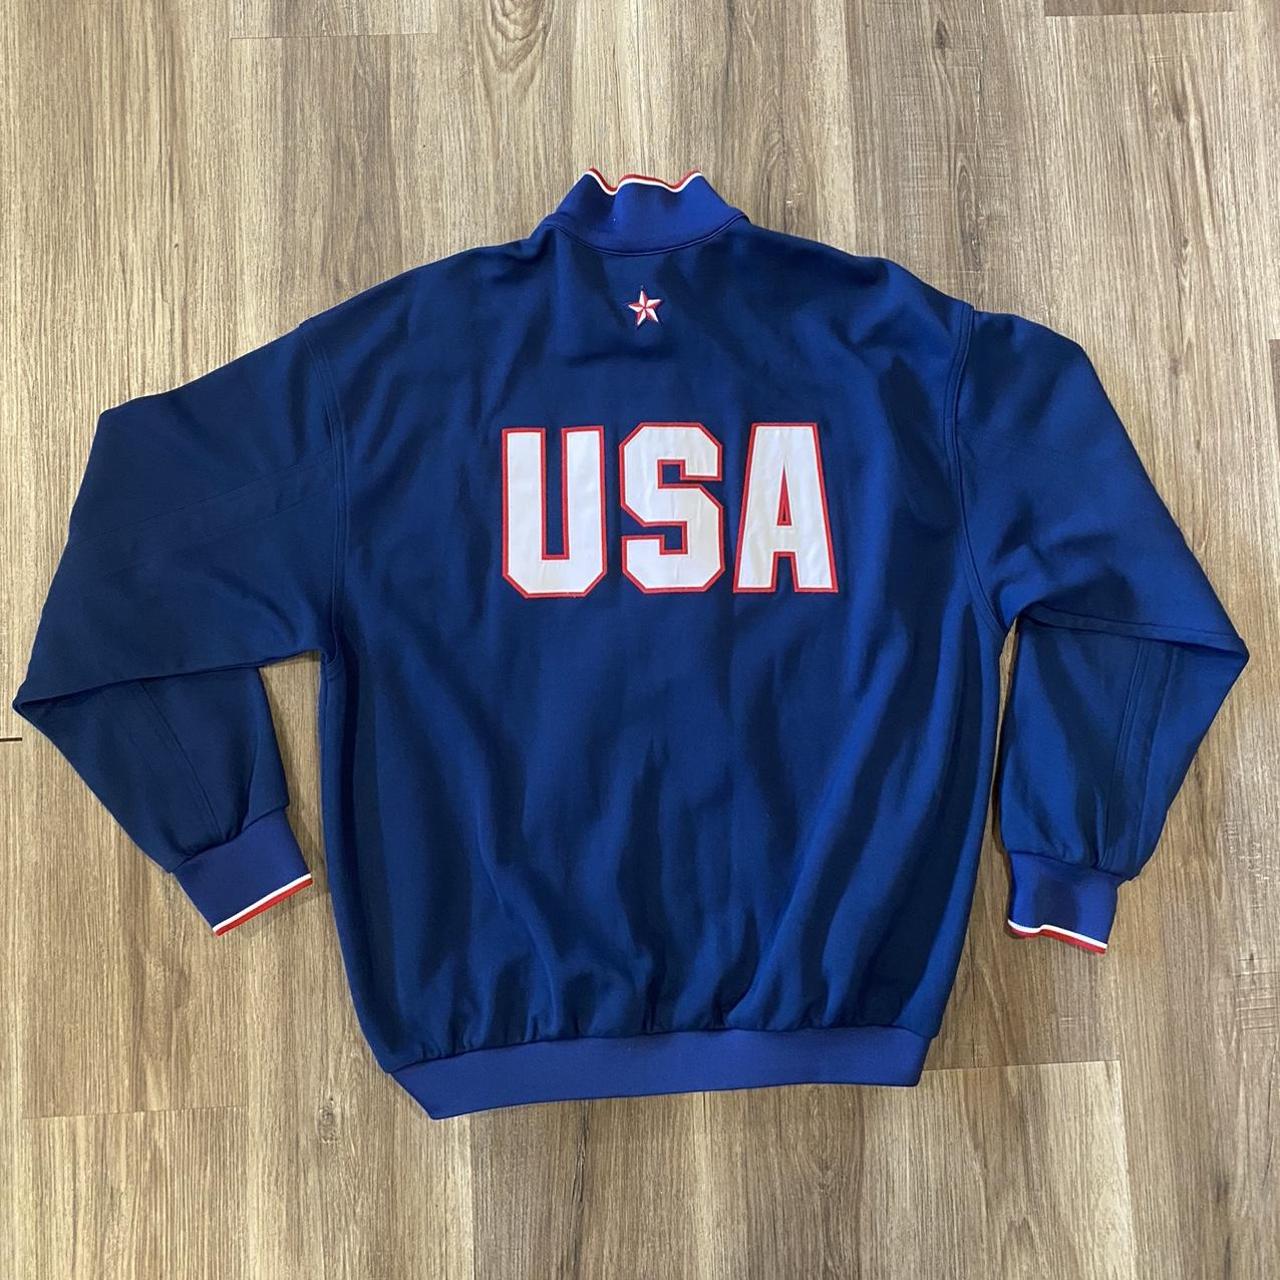 vintage 90s USMNT Nike Soccer jacket in good... - Depop